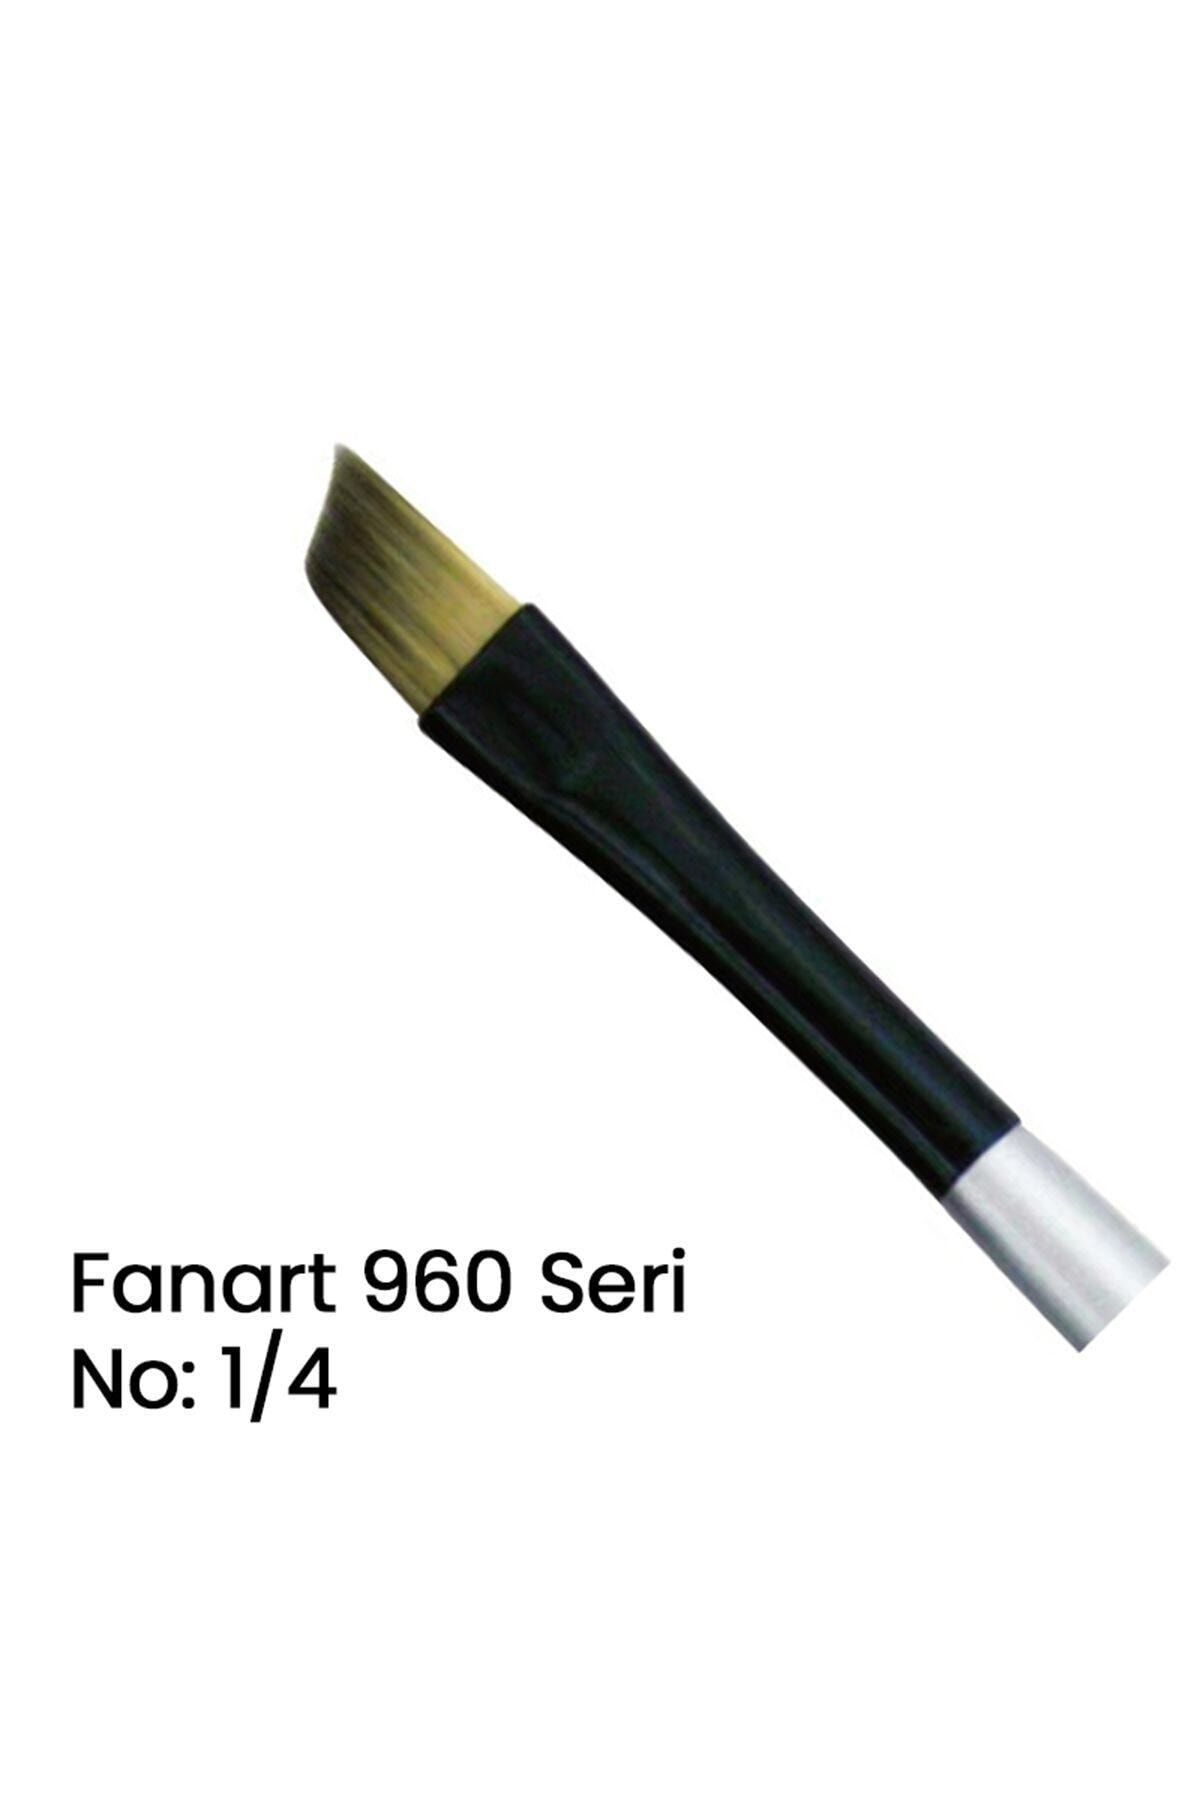 Fanart 960 Seri Yan Kesik Uçlu Fırça No 1/4